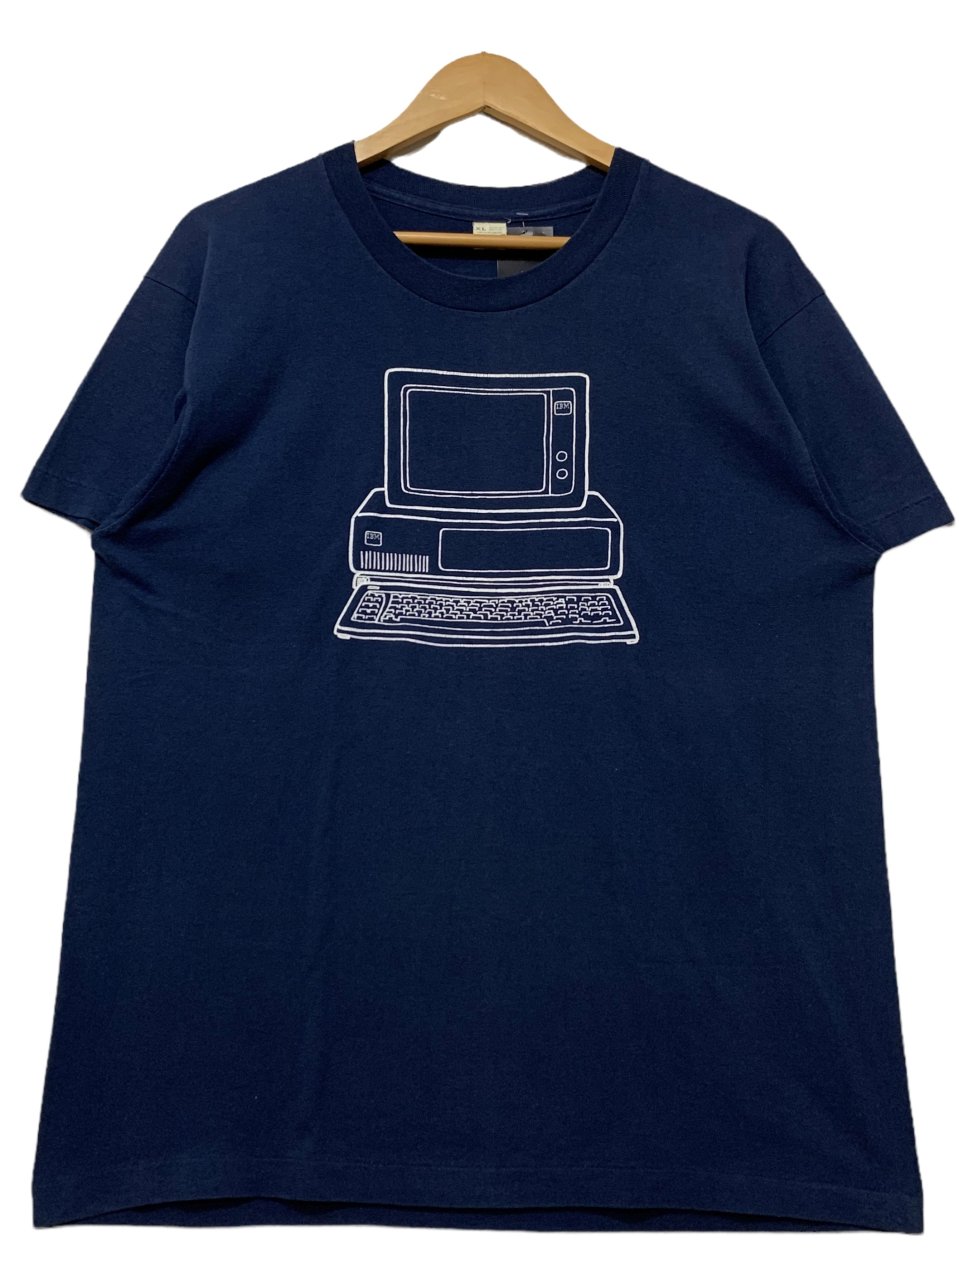 USA製 80s IBM Print S/S Tee 紺 XL アイビーエム 半袖 Tシャツ 企業物 企業T SCREEN STARS ネイビー 古着  - NEWJOKE ONLINE STORE